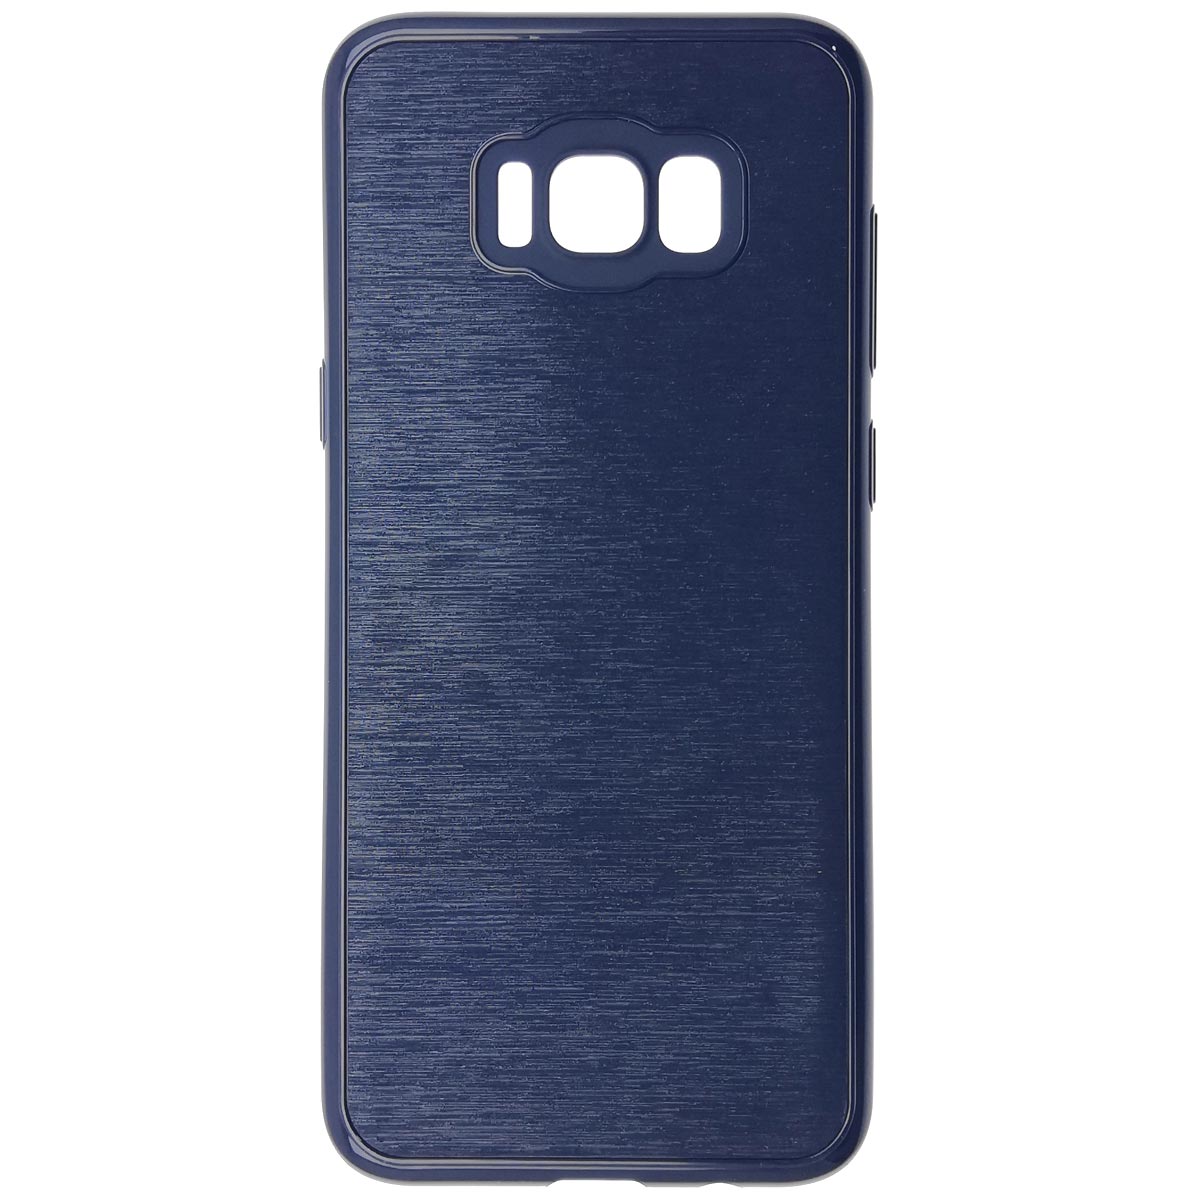 Чехол накладка для SAMSUNG Galaxy S8 Plus (SM-G955), силикон, текстура, цвет синий